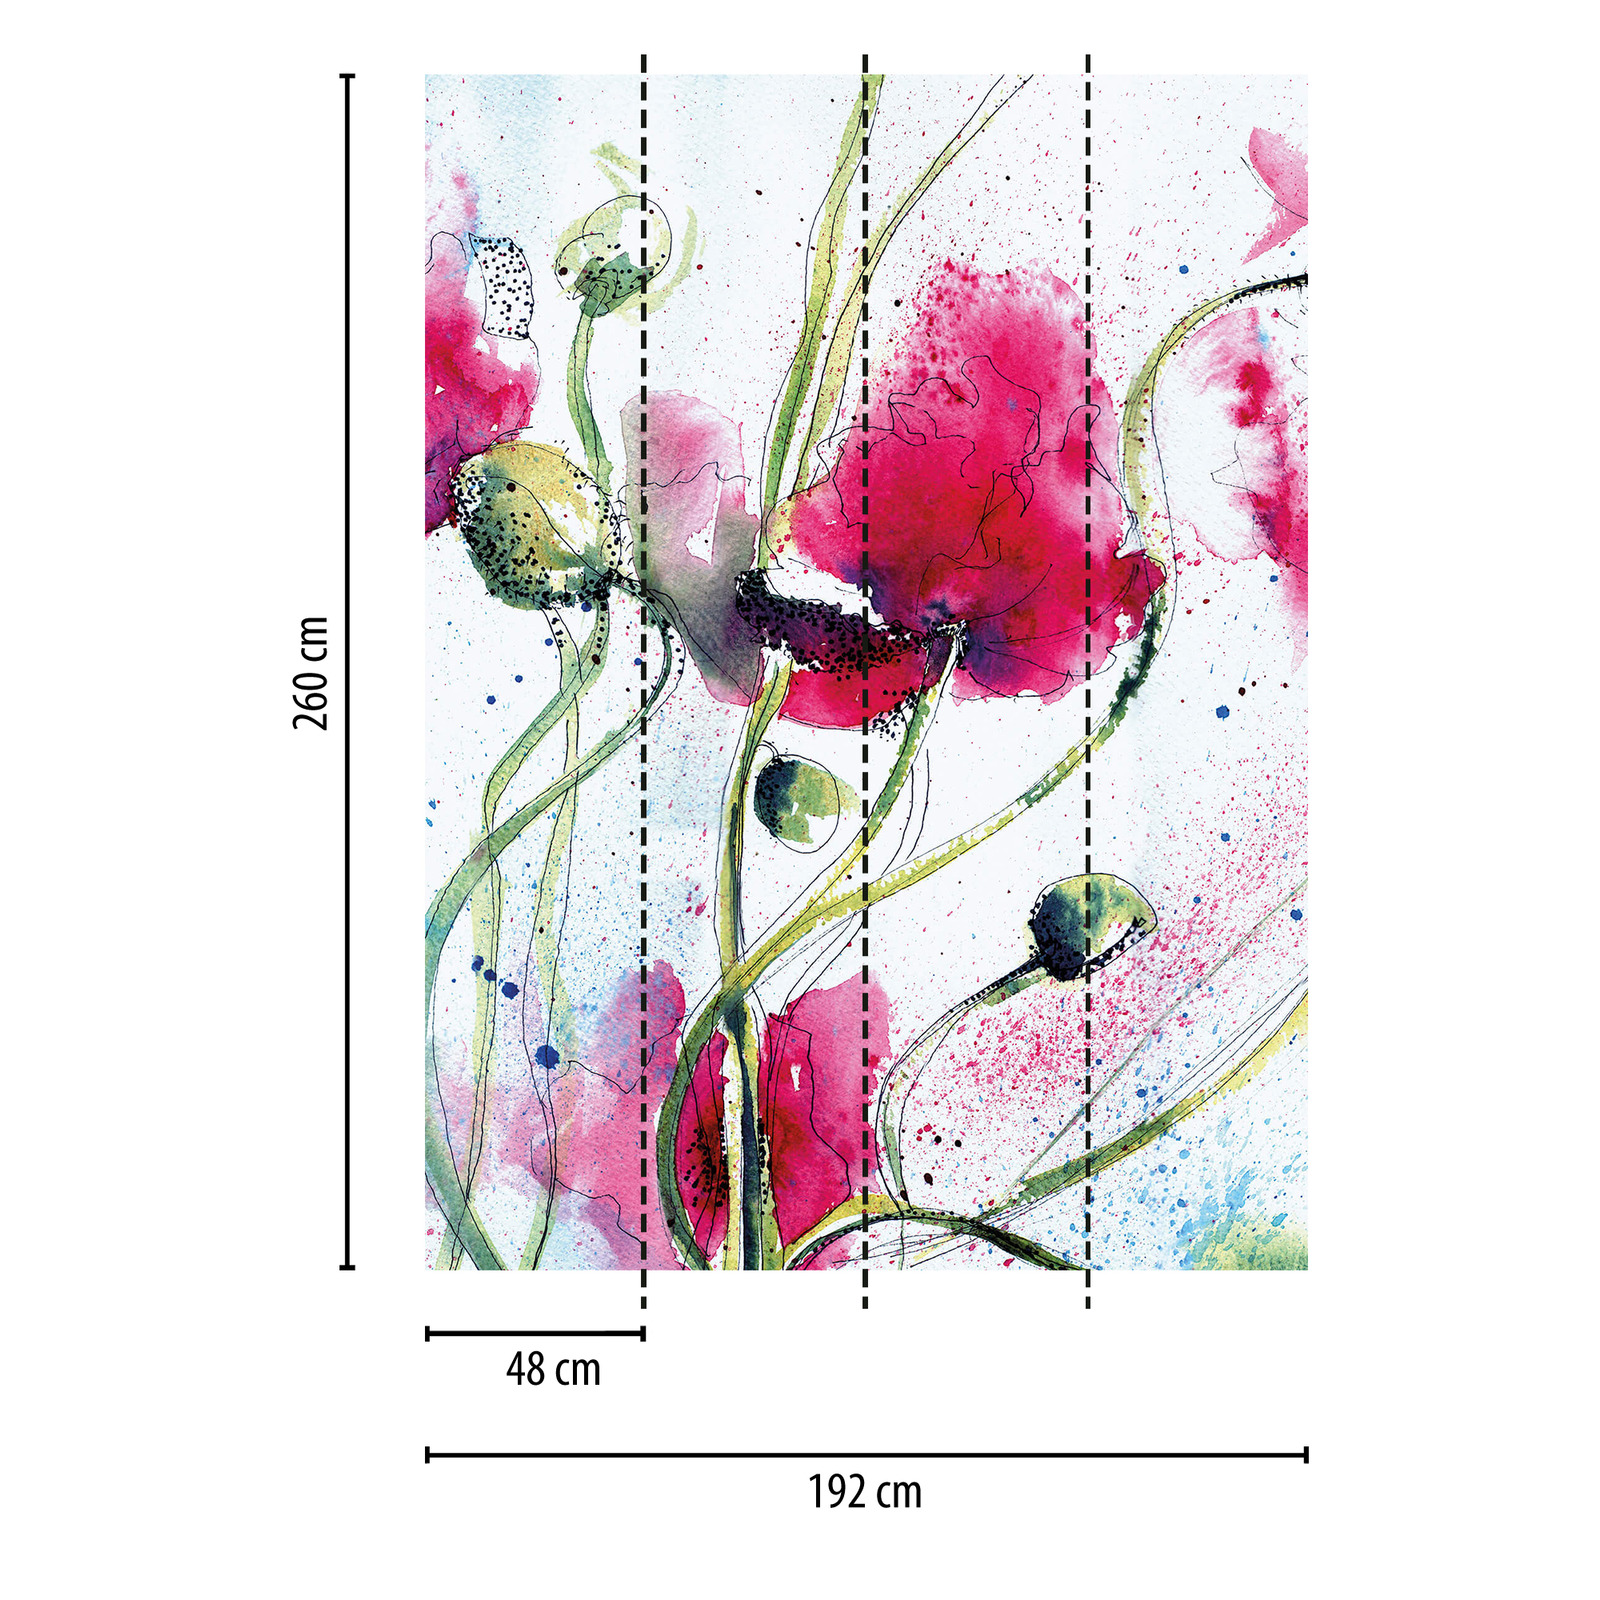             Papier peint panoramique fleurs dessinées étroites - multicolore
        